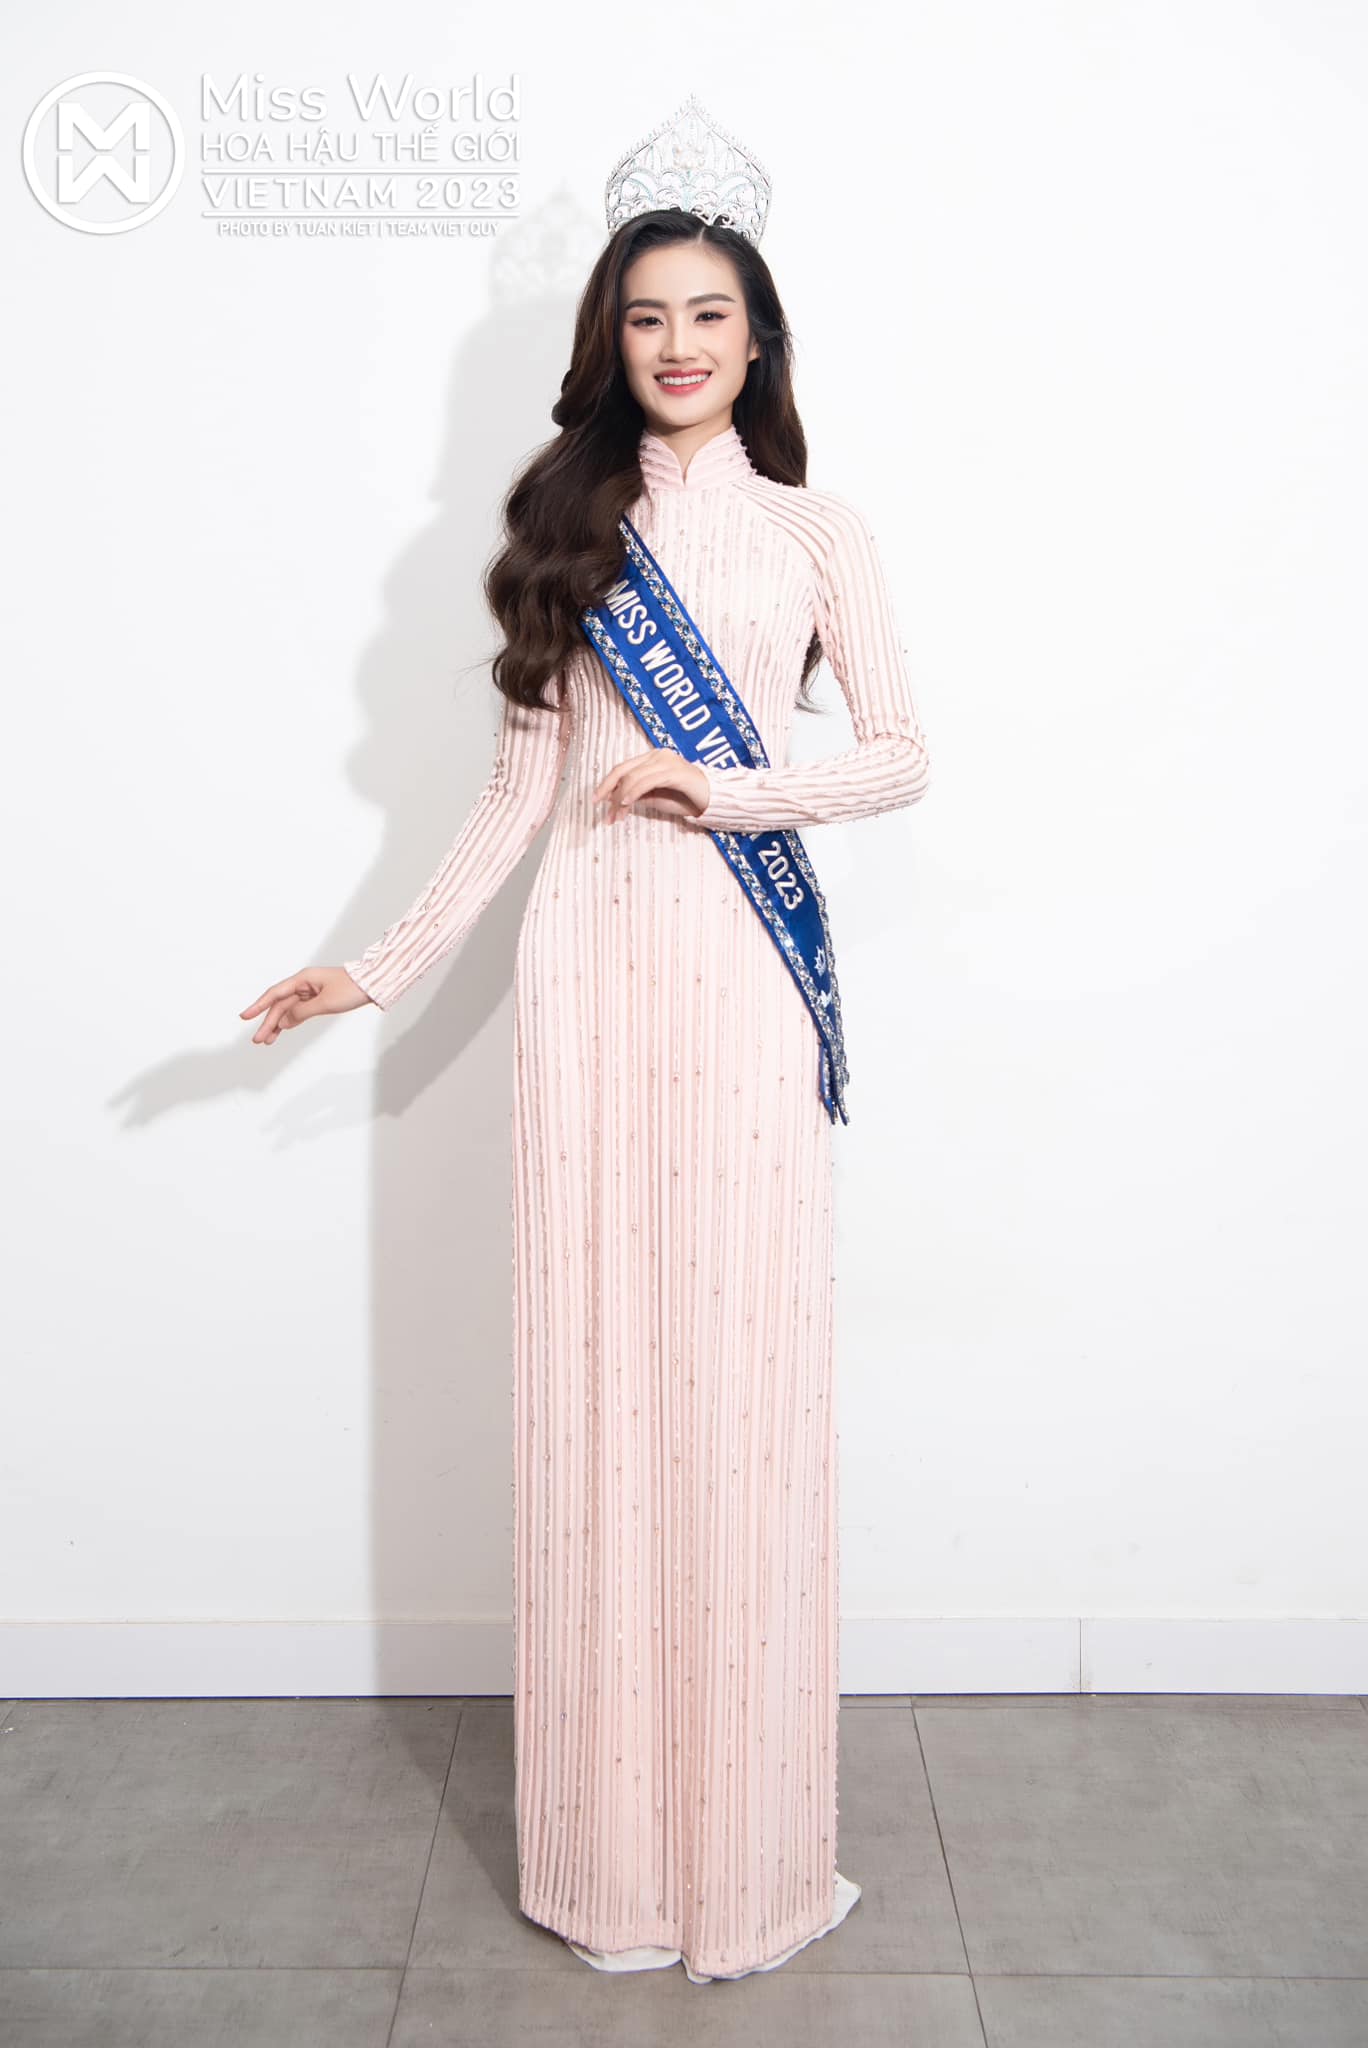 Trưởng BTC Miss World Vietnam: 'Ý Nhi vẫn sẽ đại diện Việt Nam dự thi quốc tế nếu đủ năng lực' - ảnh 2